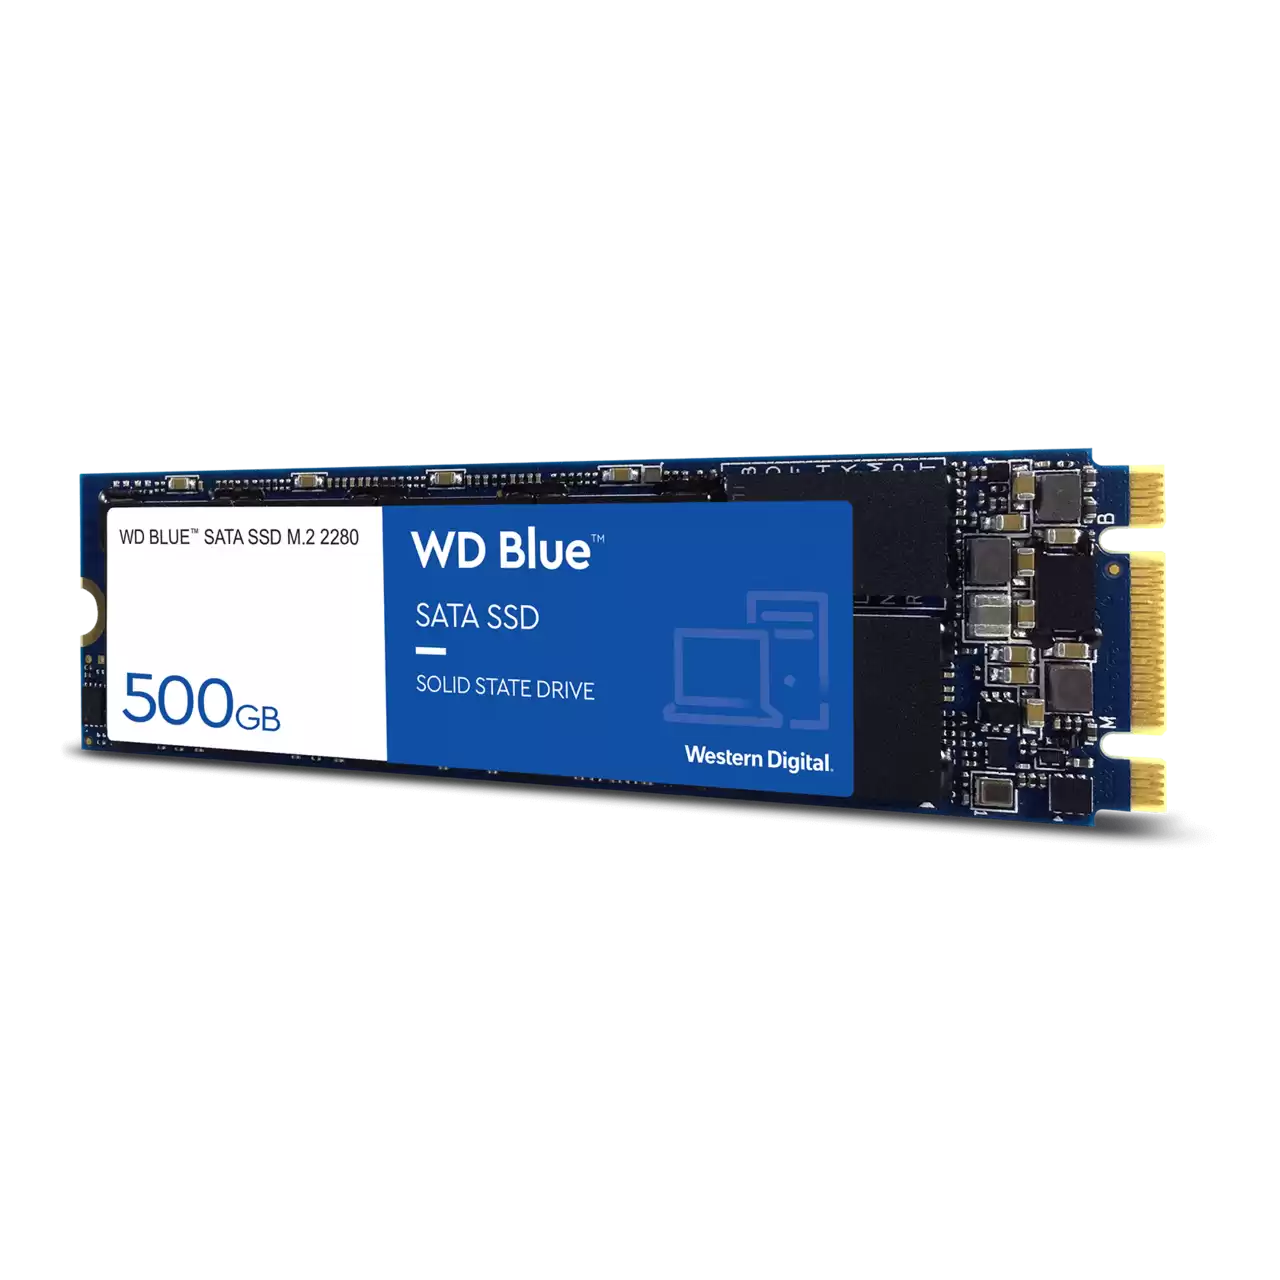 WD Blue SATA SSD 500GB M.2 2280